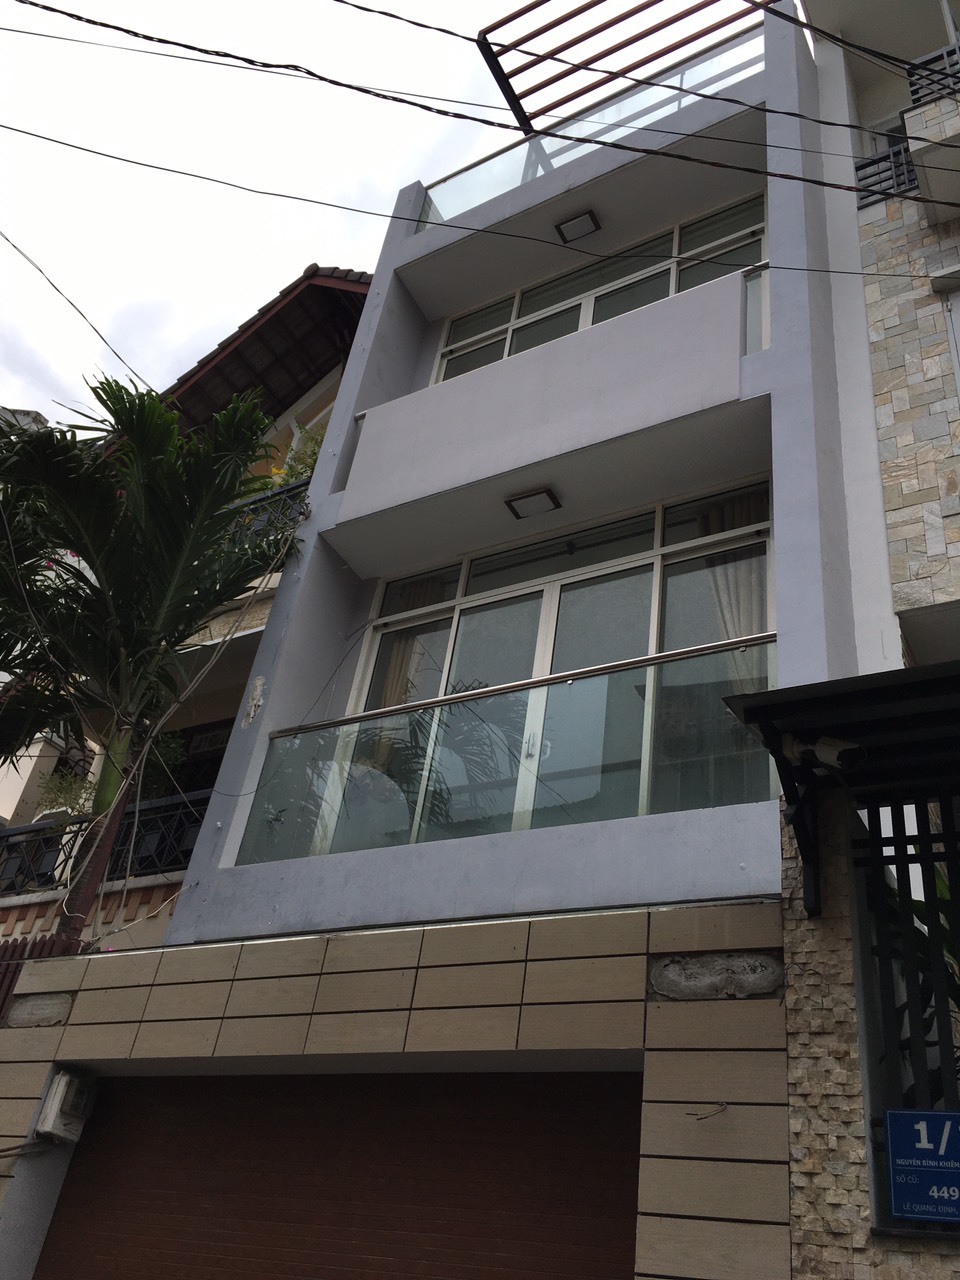 Bán nhà HXH gần mặt tiền 449G/10 Lê Quang Định p.5 quận Bình Thạnh. Giá 8,6 tỷ